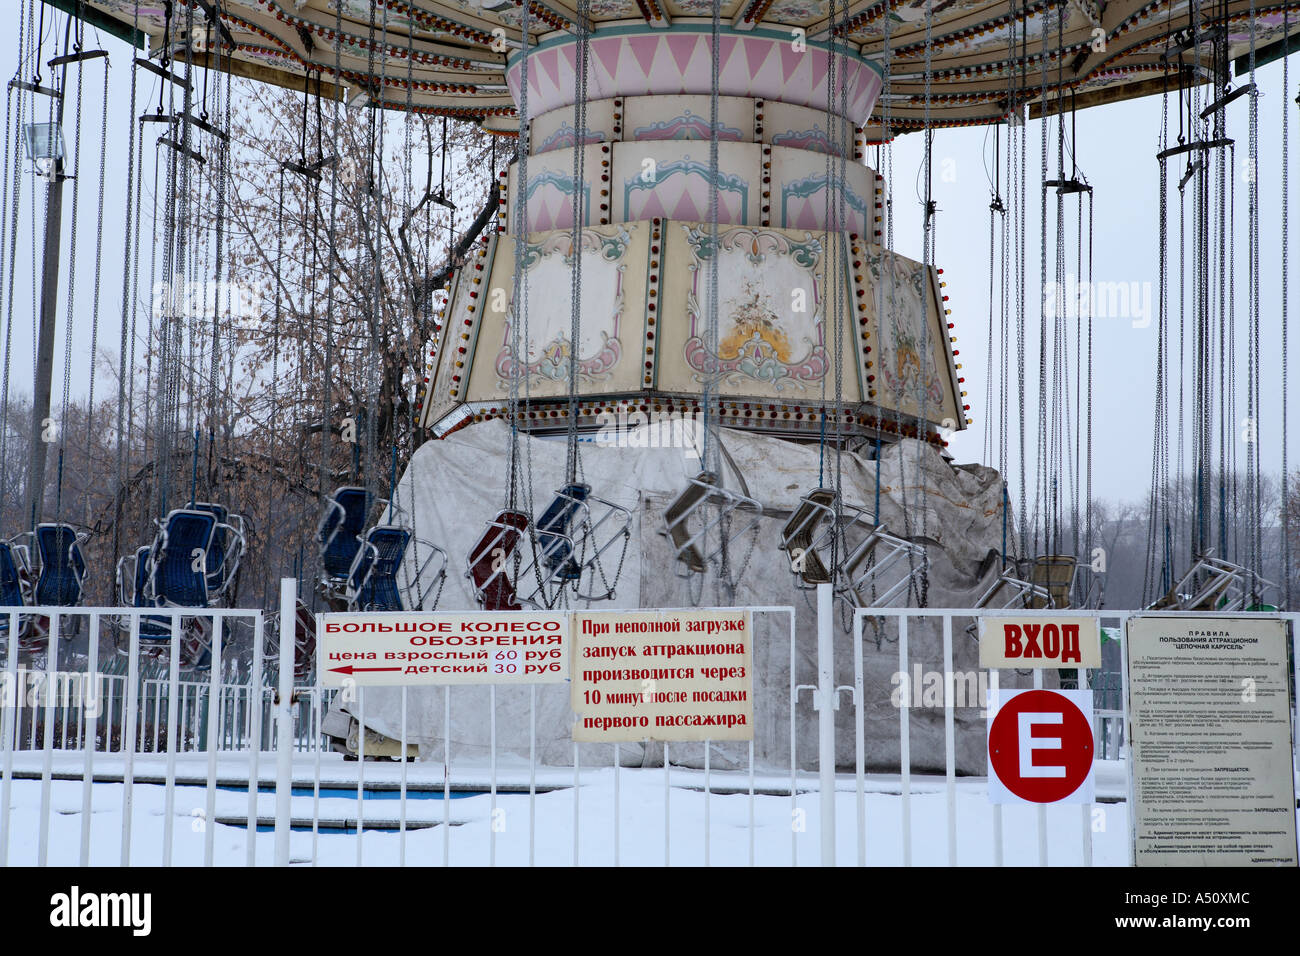 Carrousel de foire abandonnés Ride, Le Parc Gorky, Moscou Banque D'Images